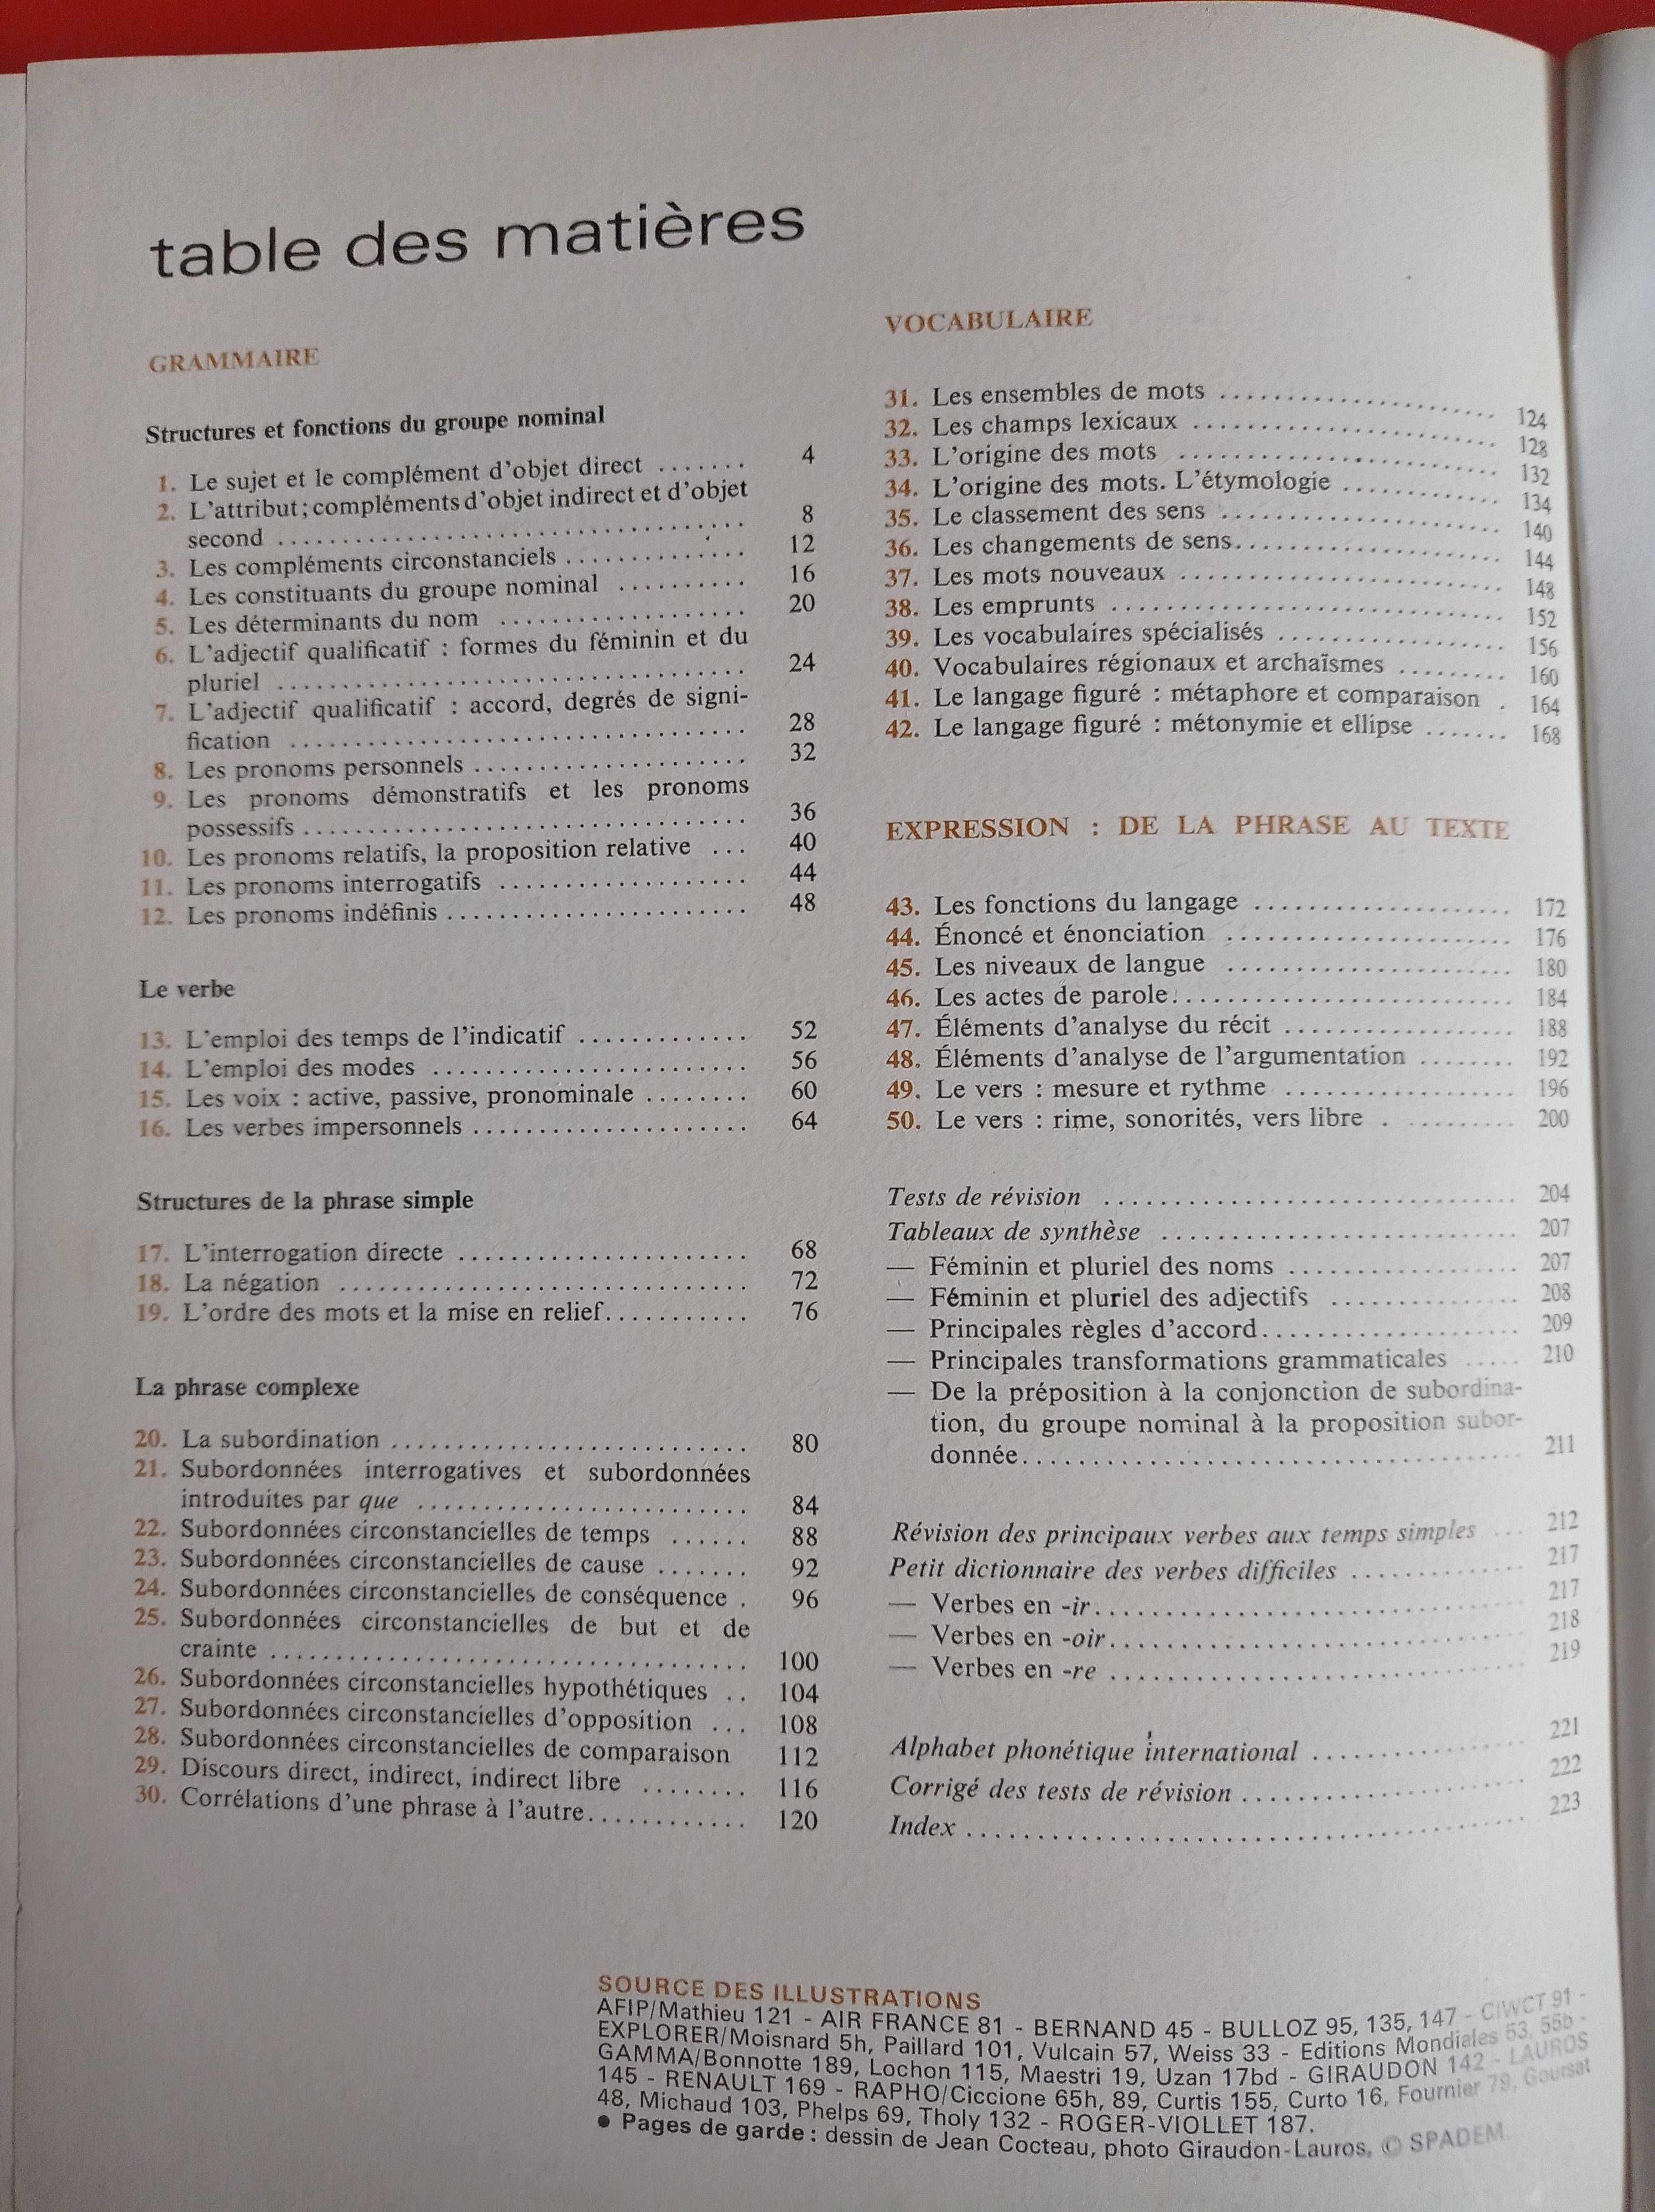 Nouvel itineraire grammatical 3 gramatyka francuska, Mitterand